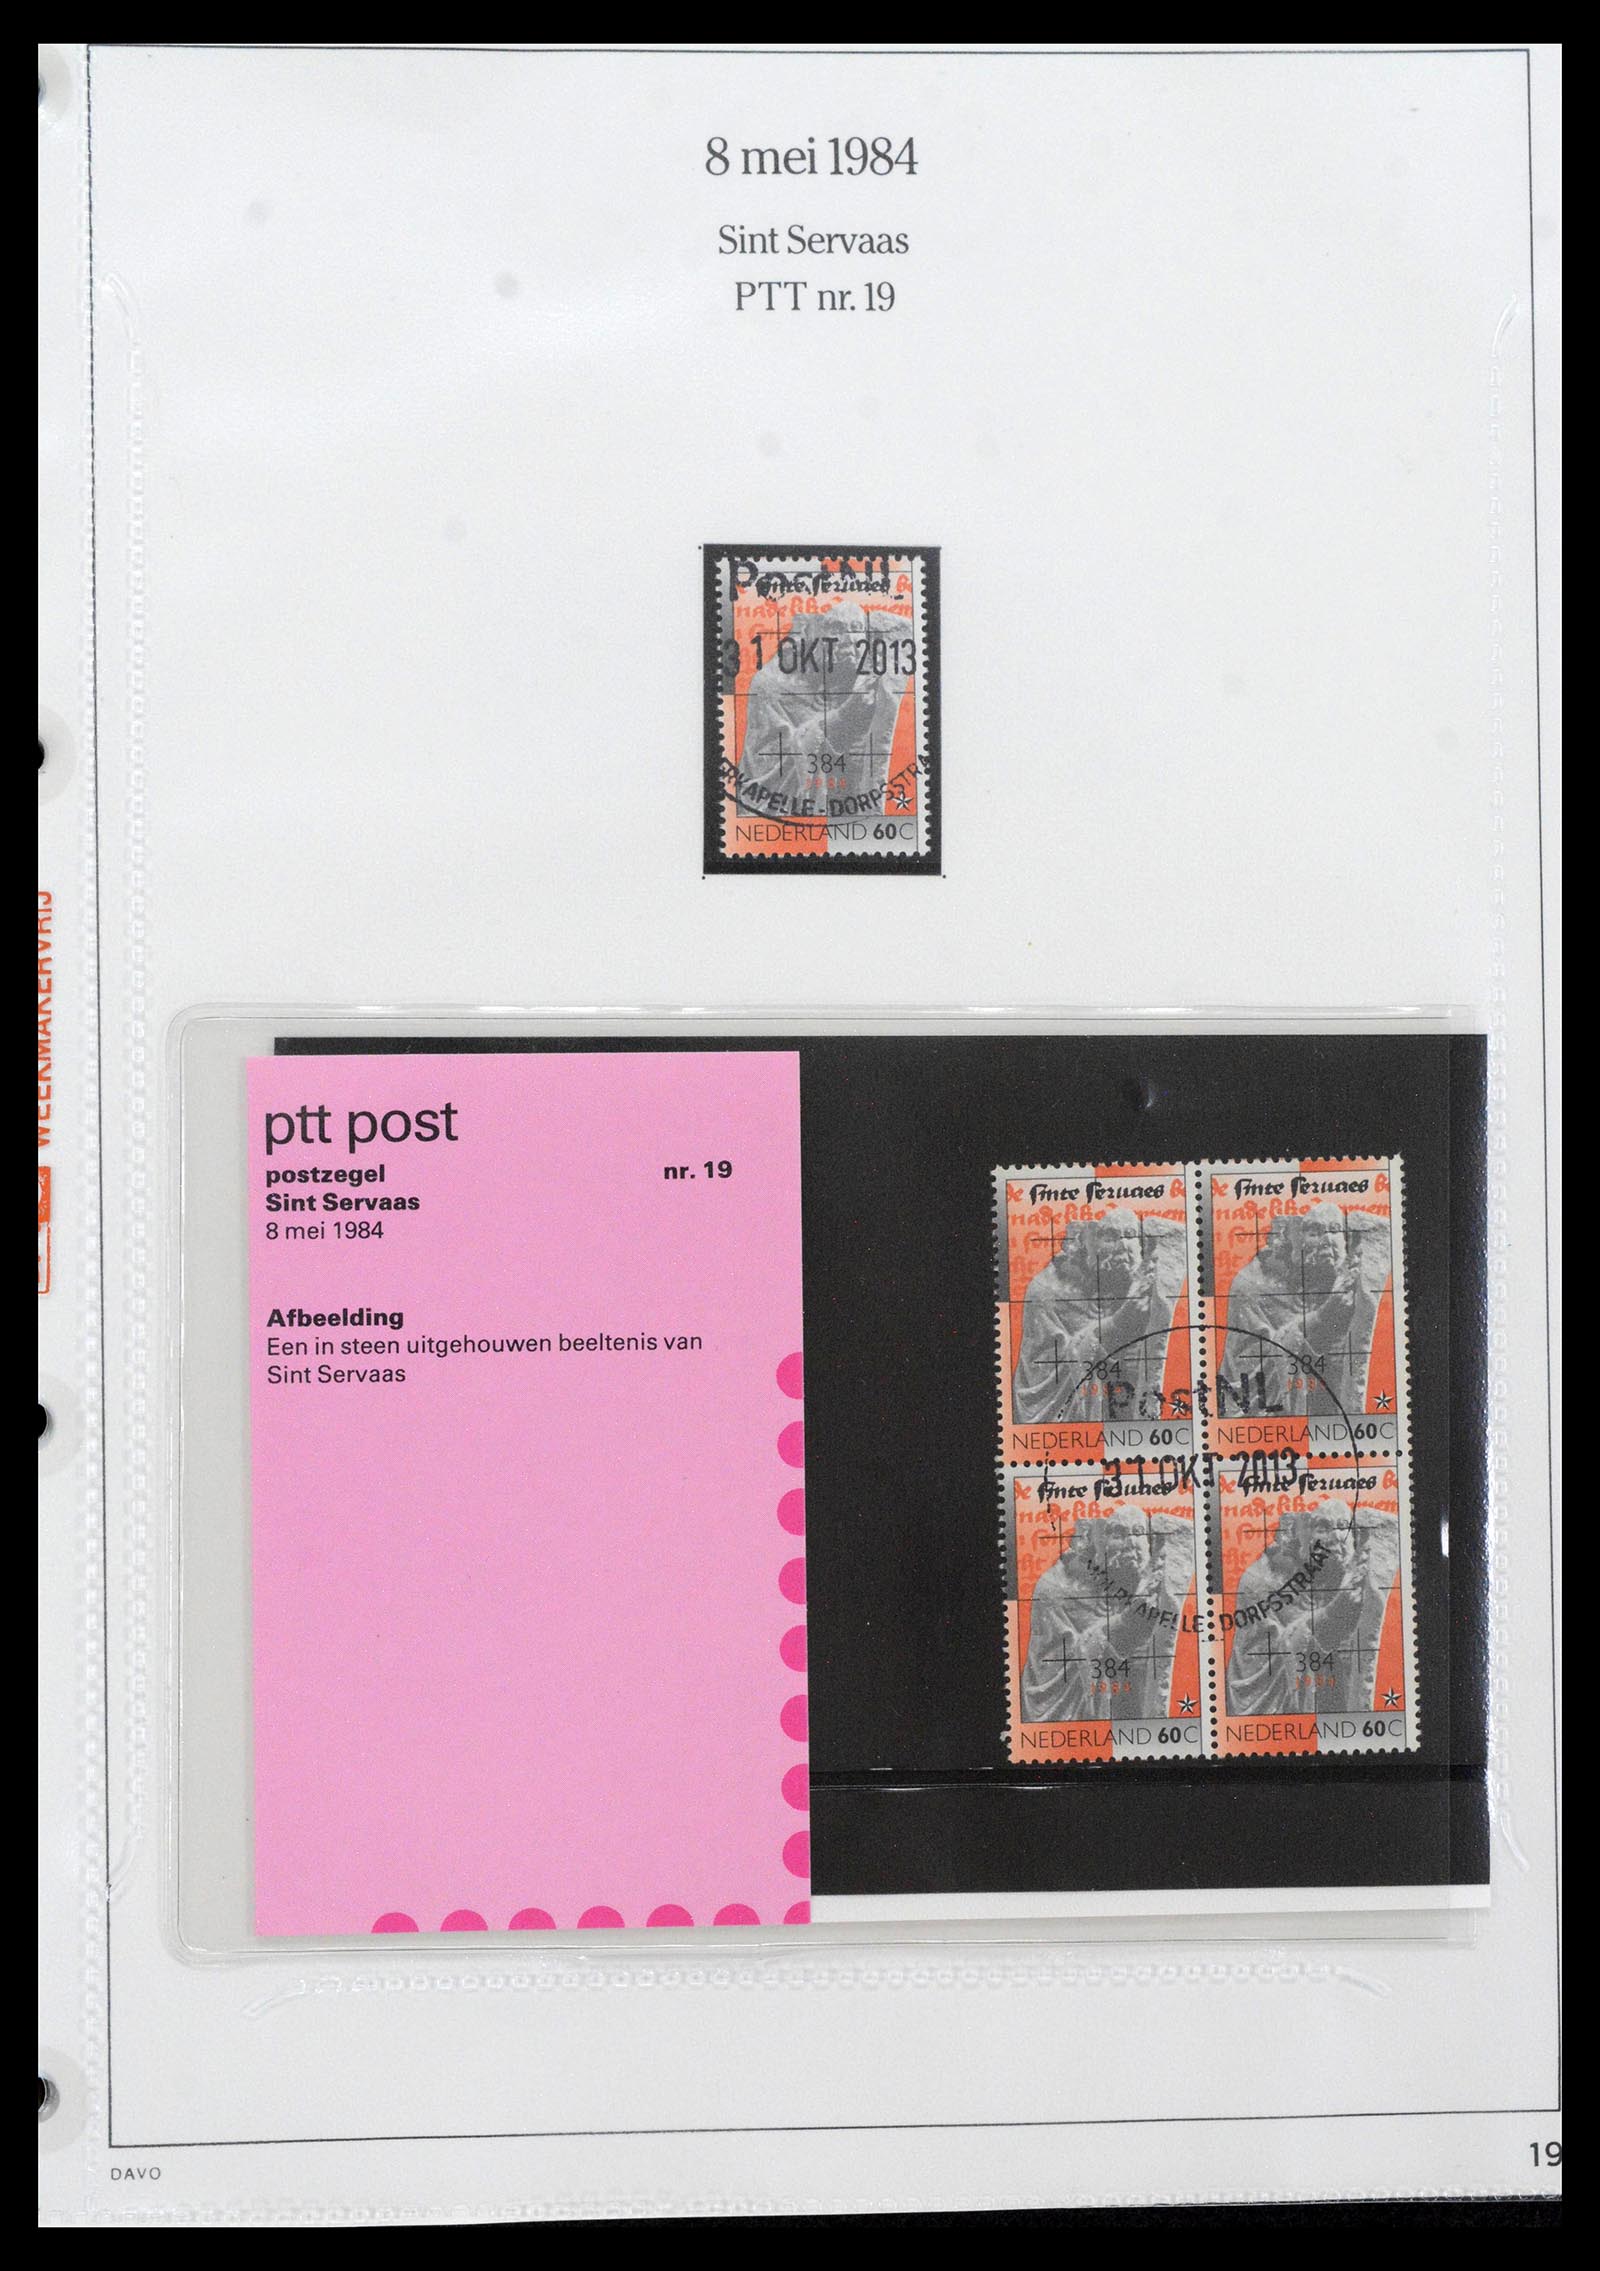 39121 0019 - Stamp collection 39121 Netherlands presentationpacks 1982-2001.